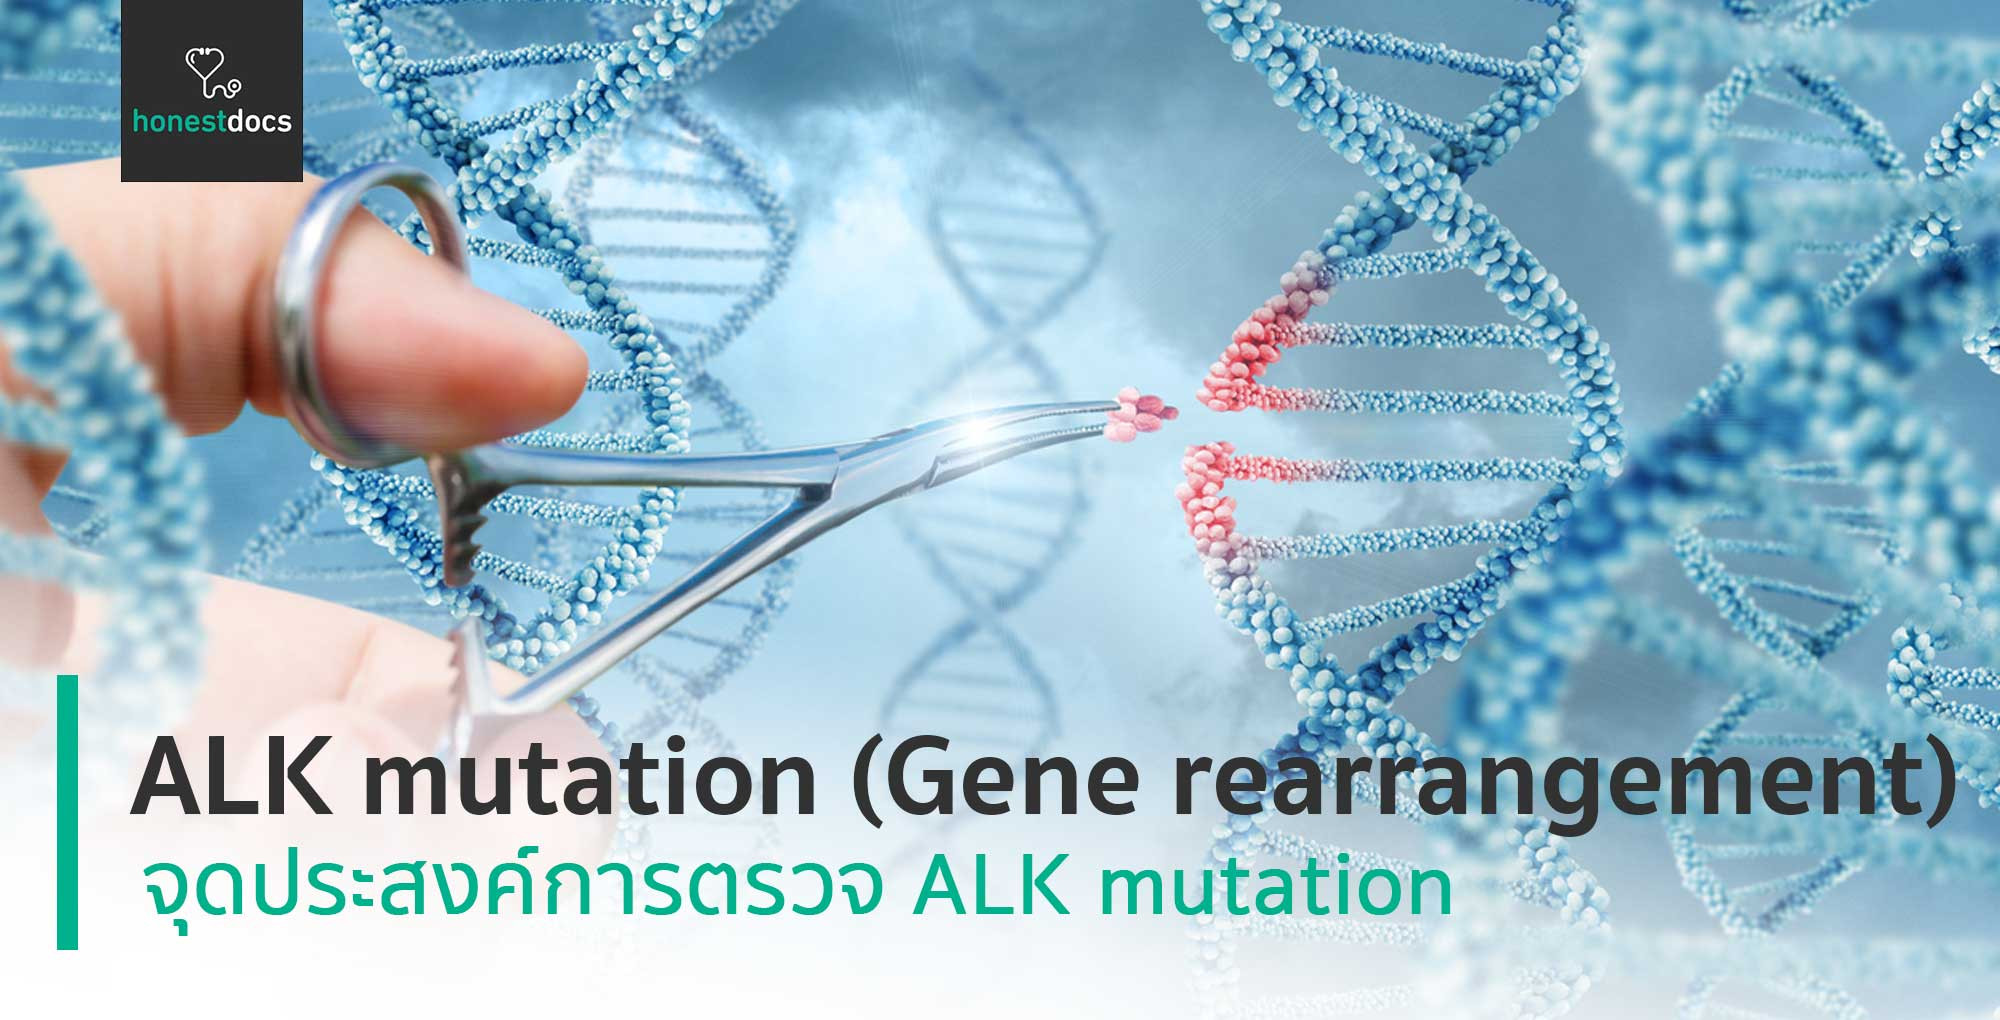 alk-mutation-gene-rearrangement-hd